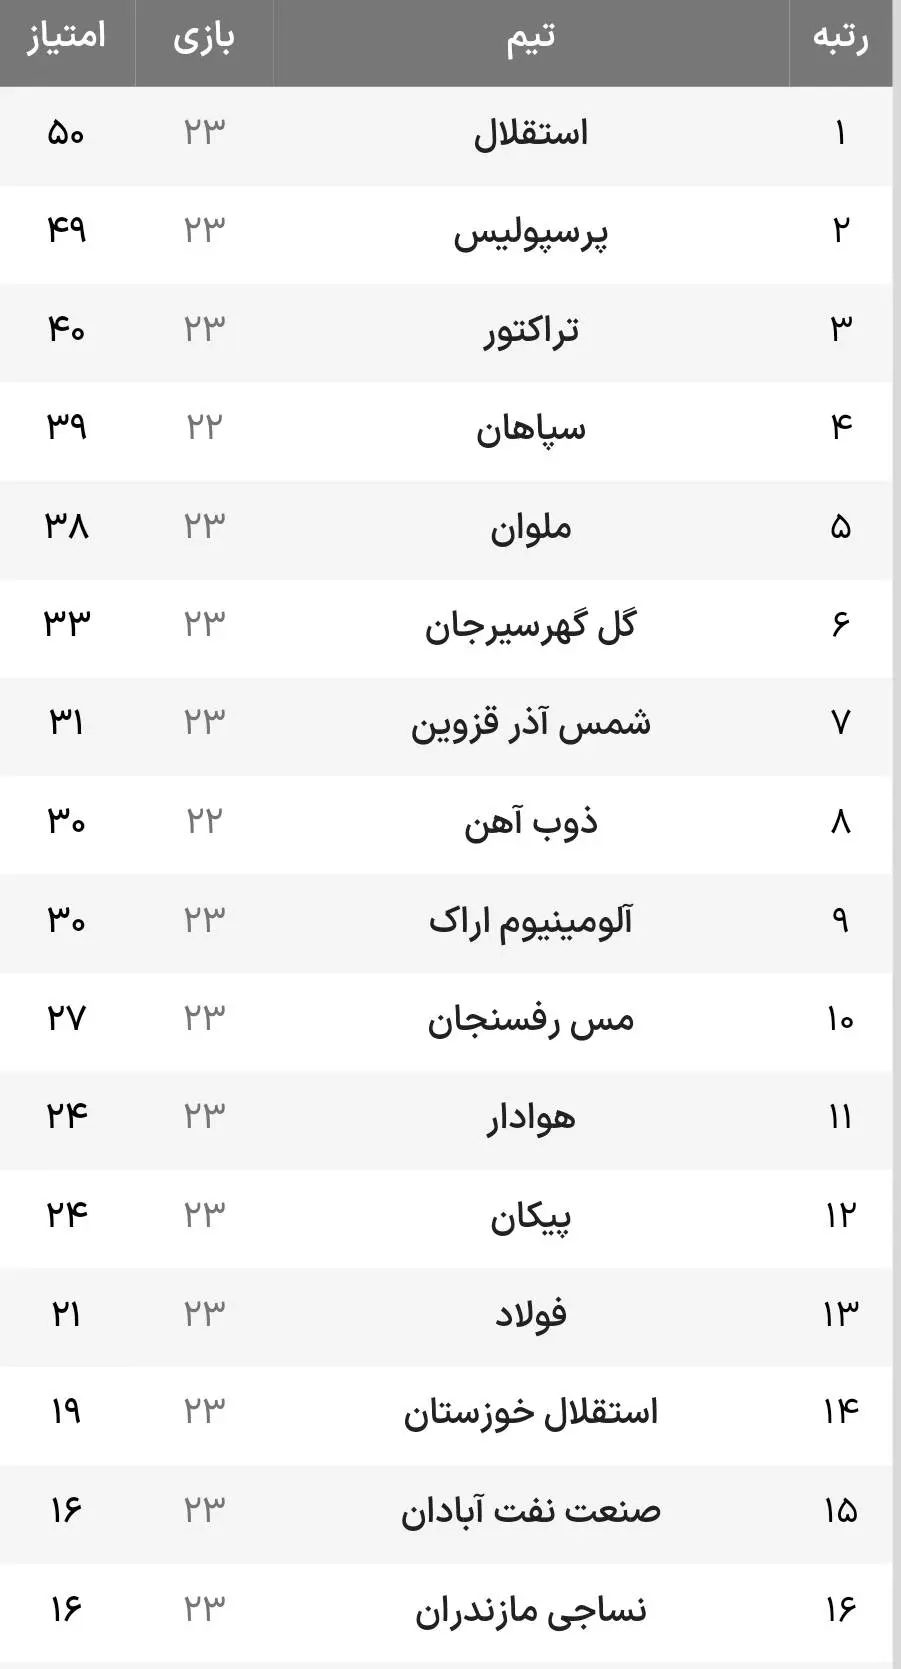 جدول لیگ برتر بعد از بازیهای هفته ۲۳ لیگ برتر و پیروزی استقلال و پرسپولیس